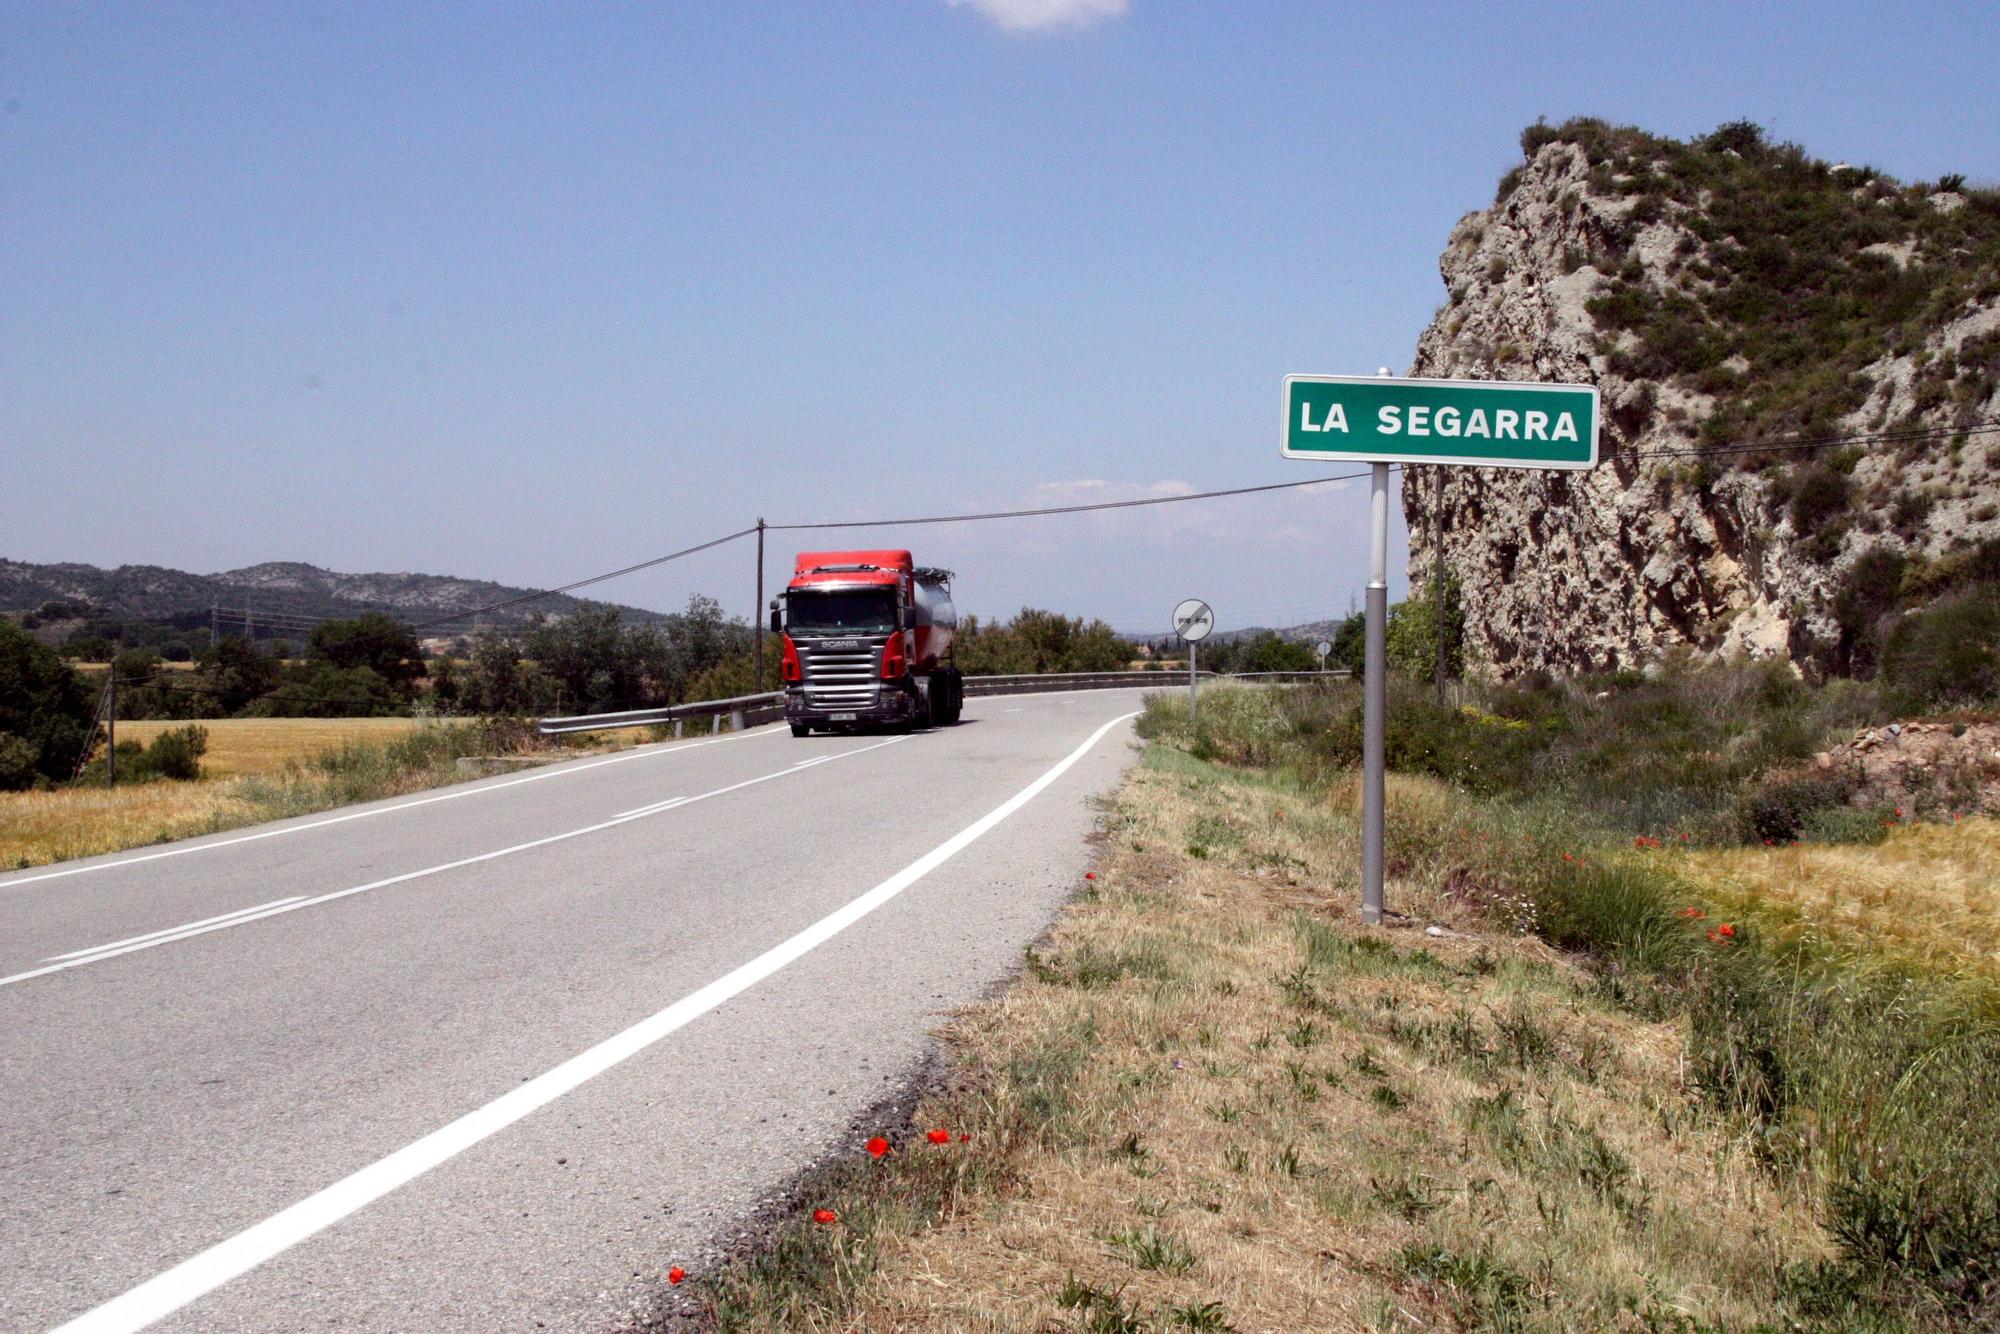 Cartel que indica entrad a la comarca de la Segrra, cerca de Torà